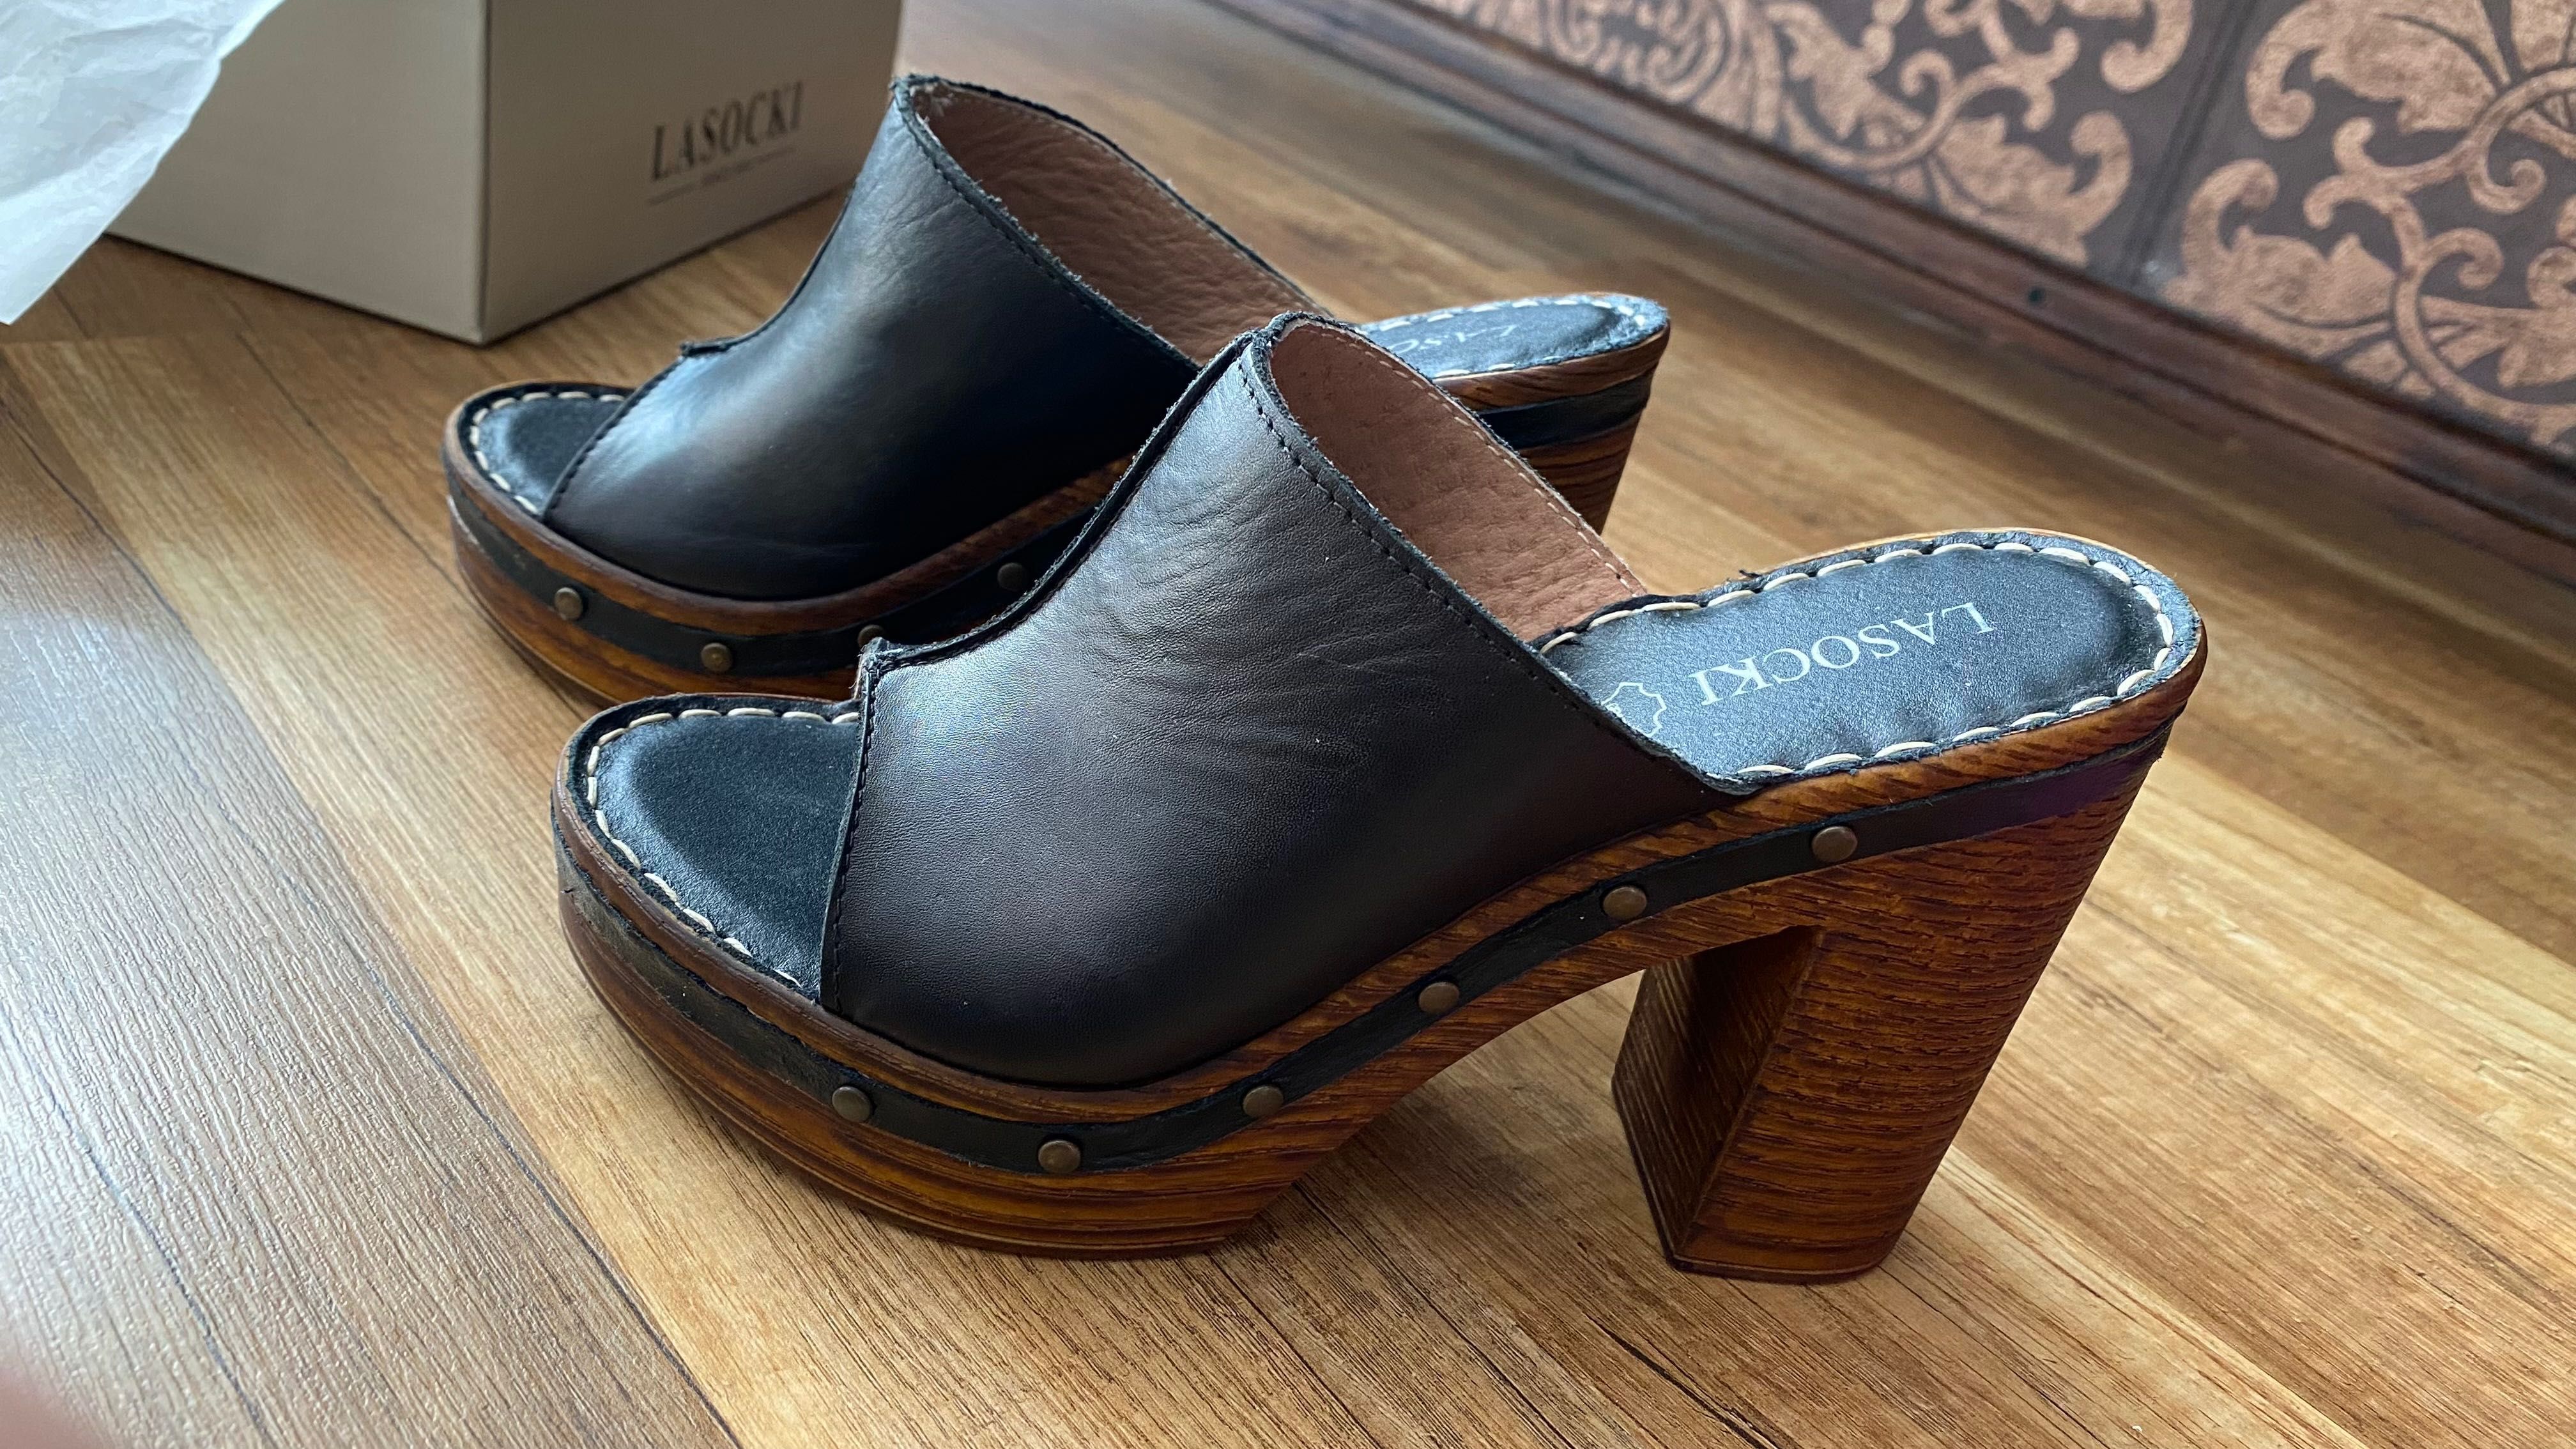 Nowe buty skórzane klapki Lasocki drewniaki z oryginalnym pudełkiem.